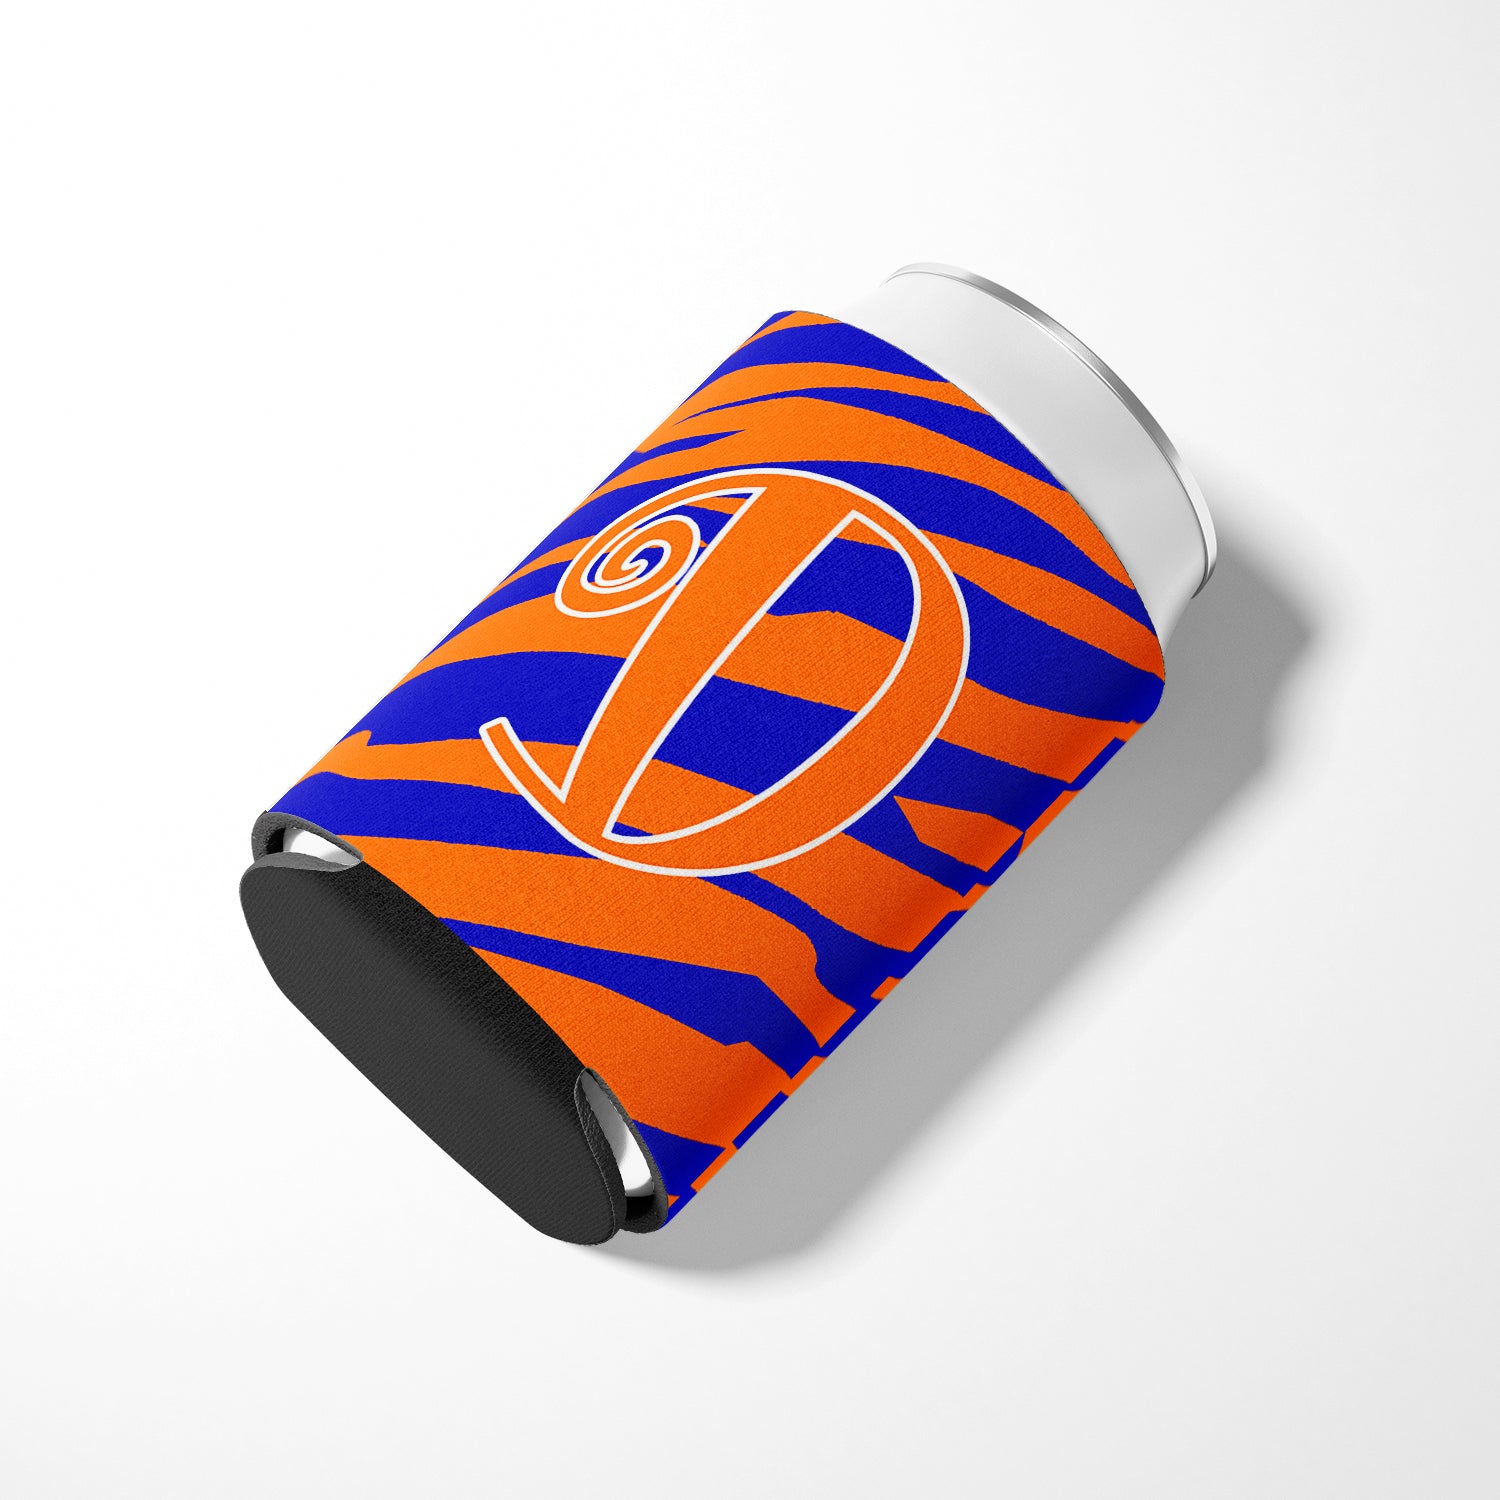 Letter D Initial Monogram - Tiger Stripe Blue and Orange Can Beverage Insulator Hugger